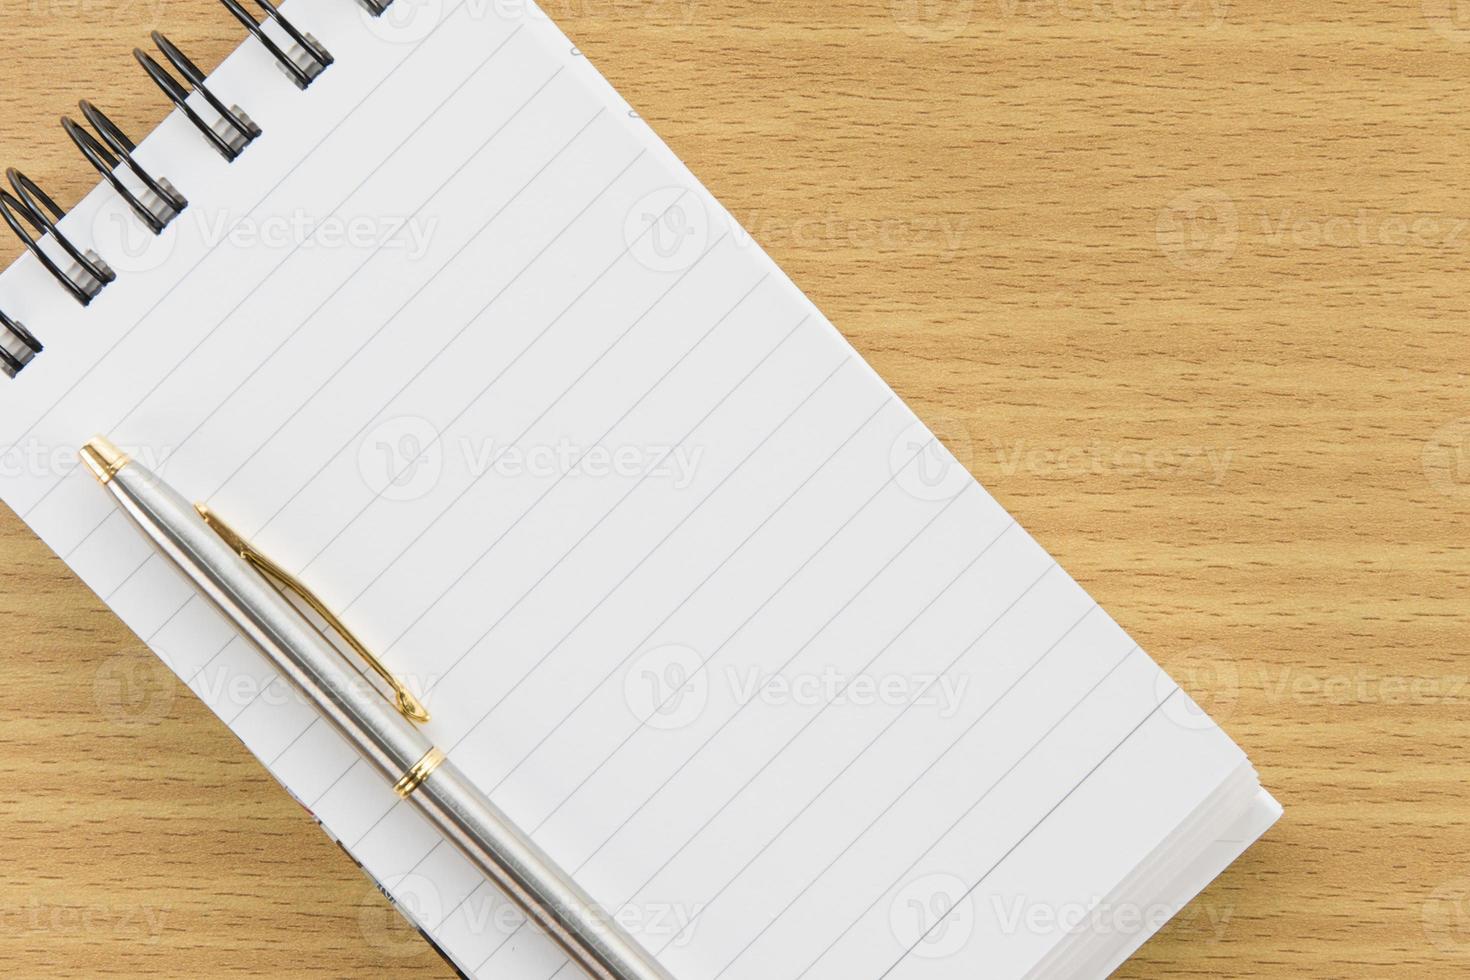 caneta e bloco de notas com página em branco foto